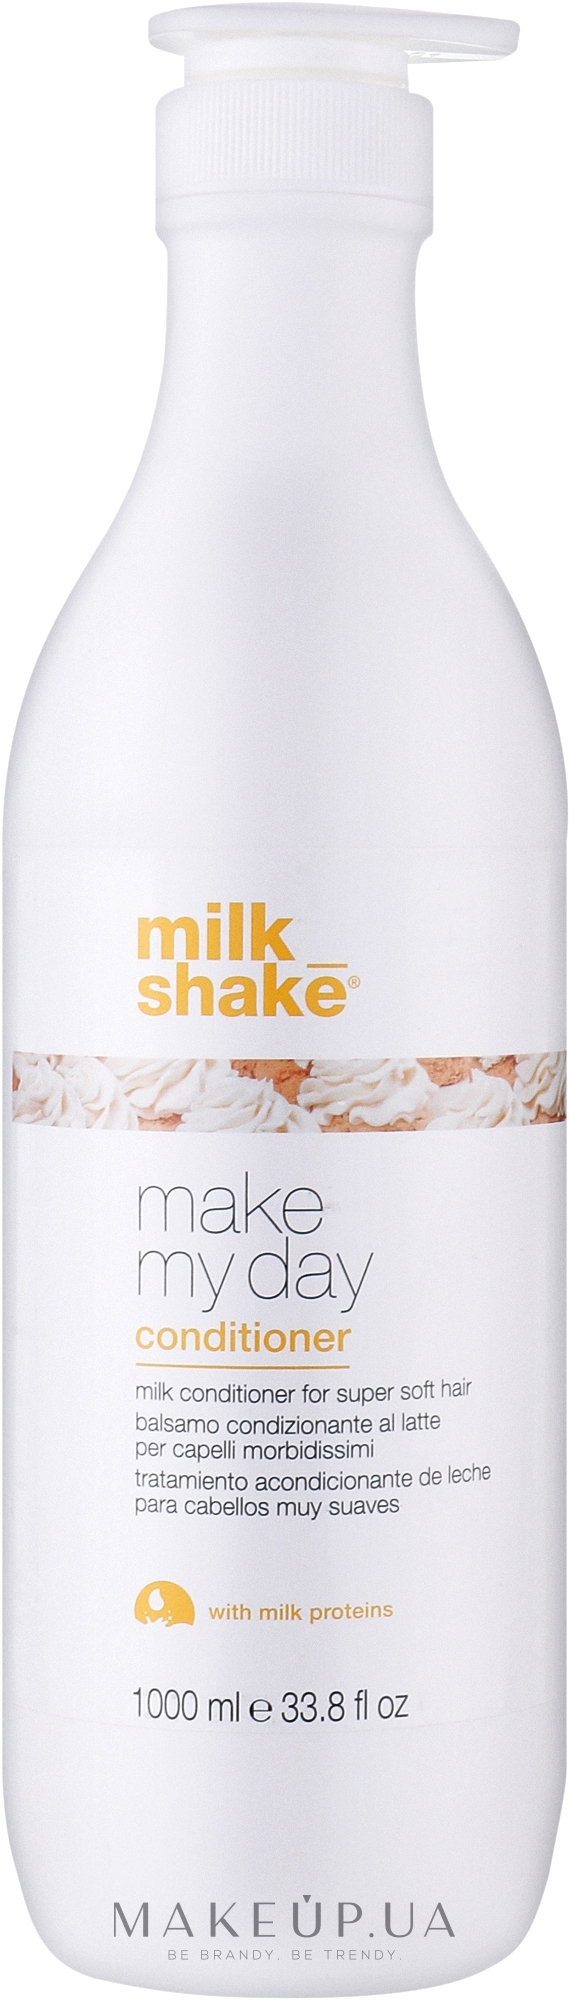 Кондиционер для смягчения волос - Milk_shake Make My Day Conditioner — фото 1000ml